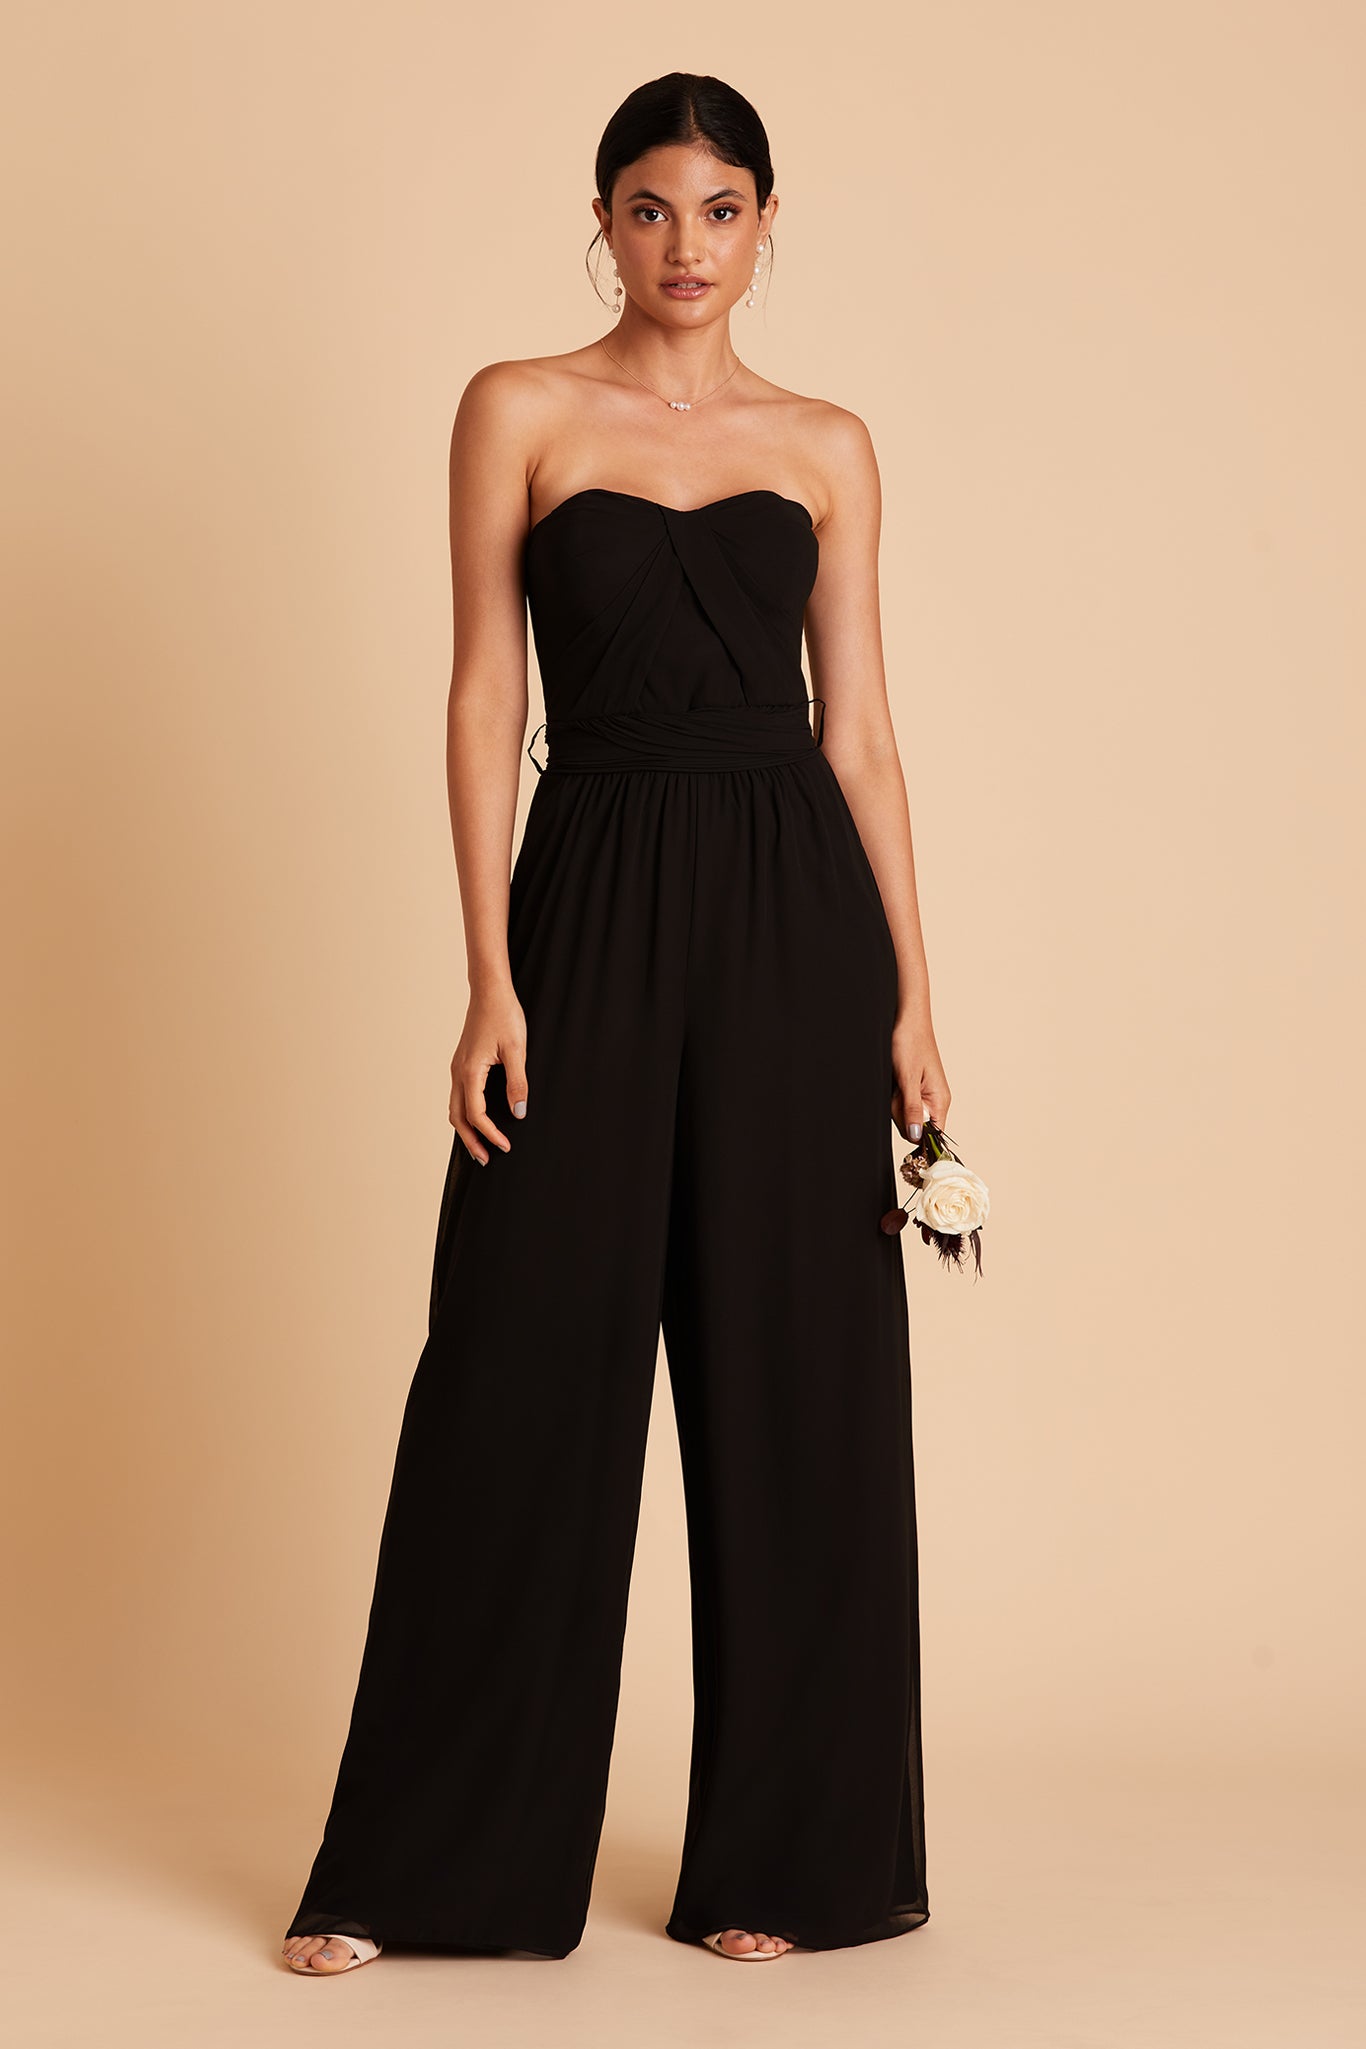 Black Azazie Maura Sequins Lace Chiffon Jumpsuit/Pantsuit | Azazie